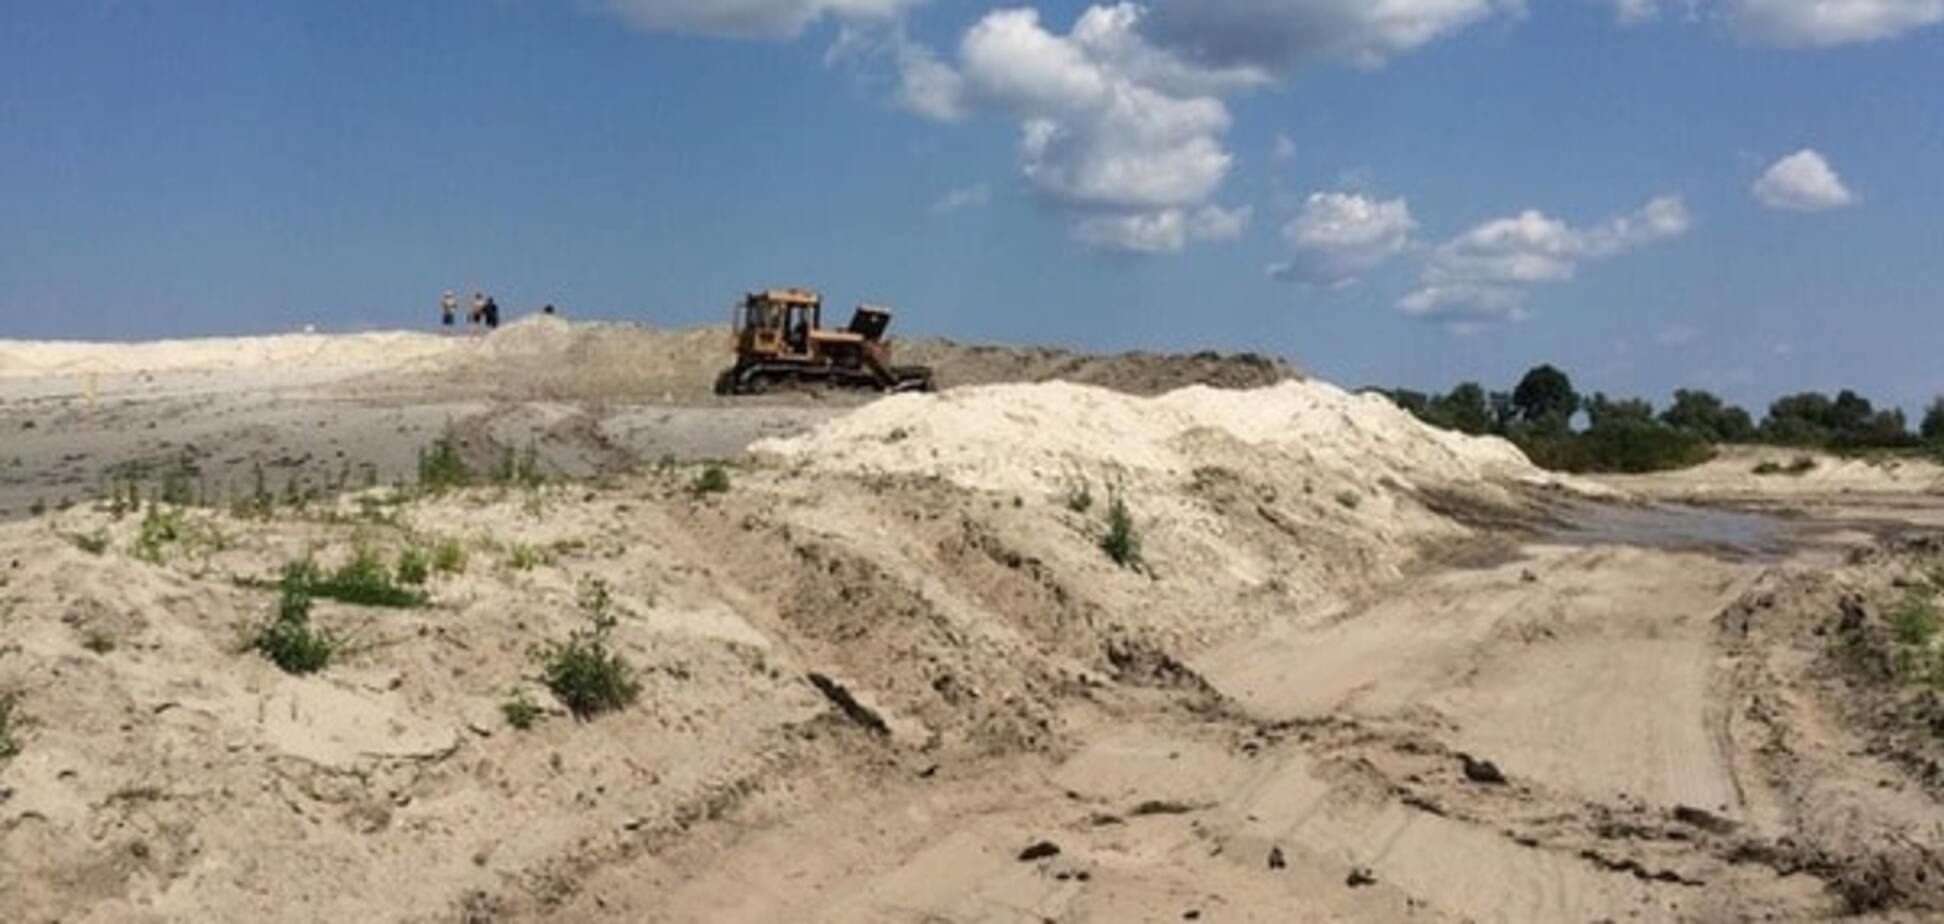 Весь нелегальный бизнес крышуют: СМИ указали ГПУ на незаконную добычу песка